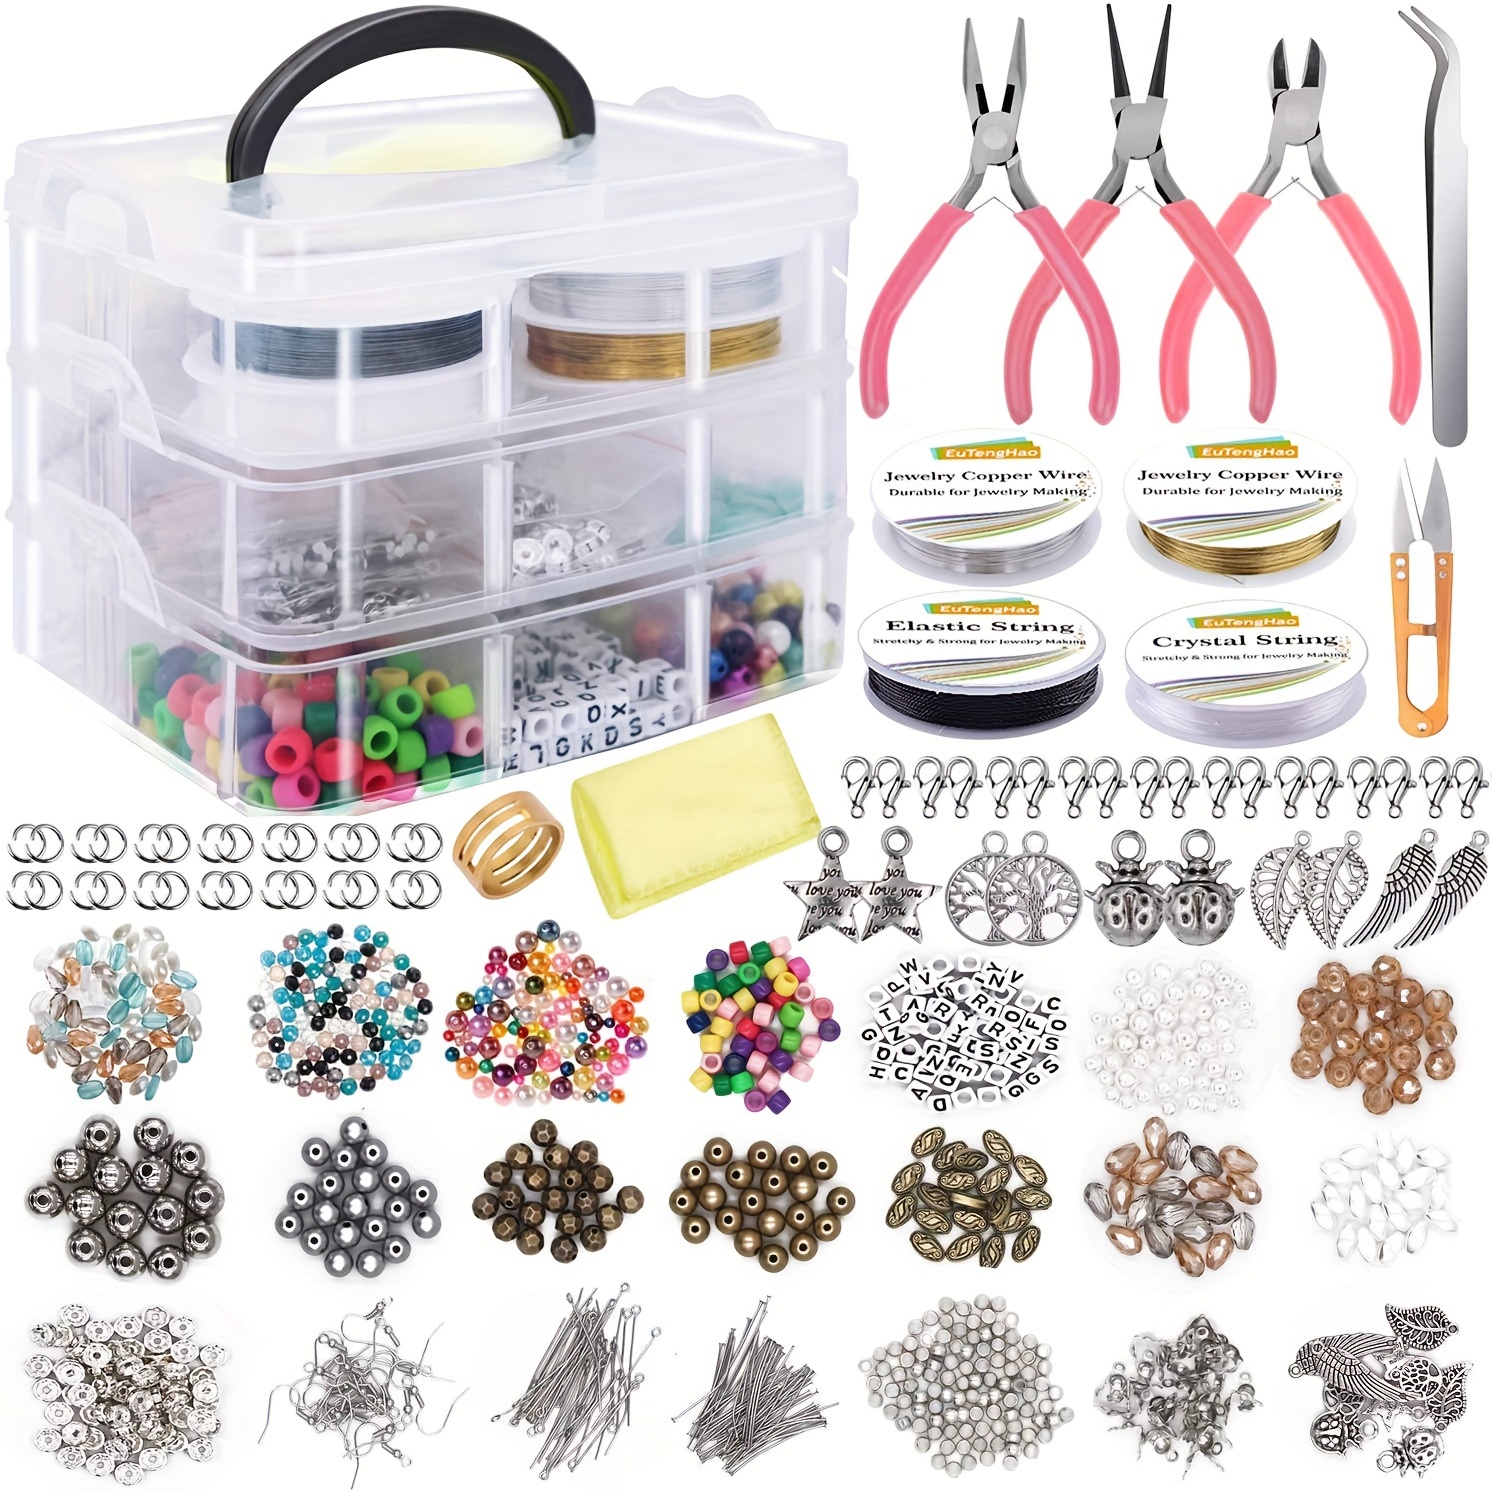  Kit de suministros para hacer joyas, aretes y herramientas de  reparación, incluye dijes de joyería, cuentas, hallazgos, estuche y alambre  de cuentas para collar, pulsera, regalos de manualidades para niñas y